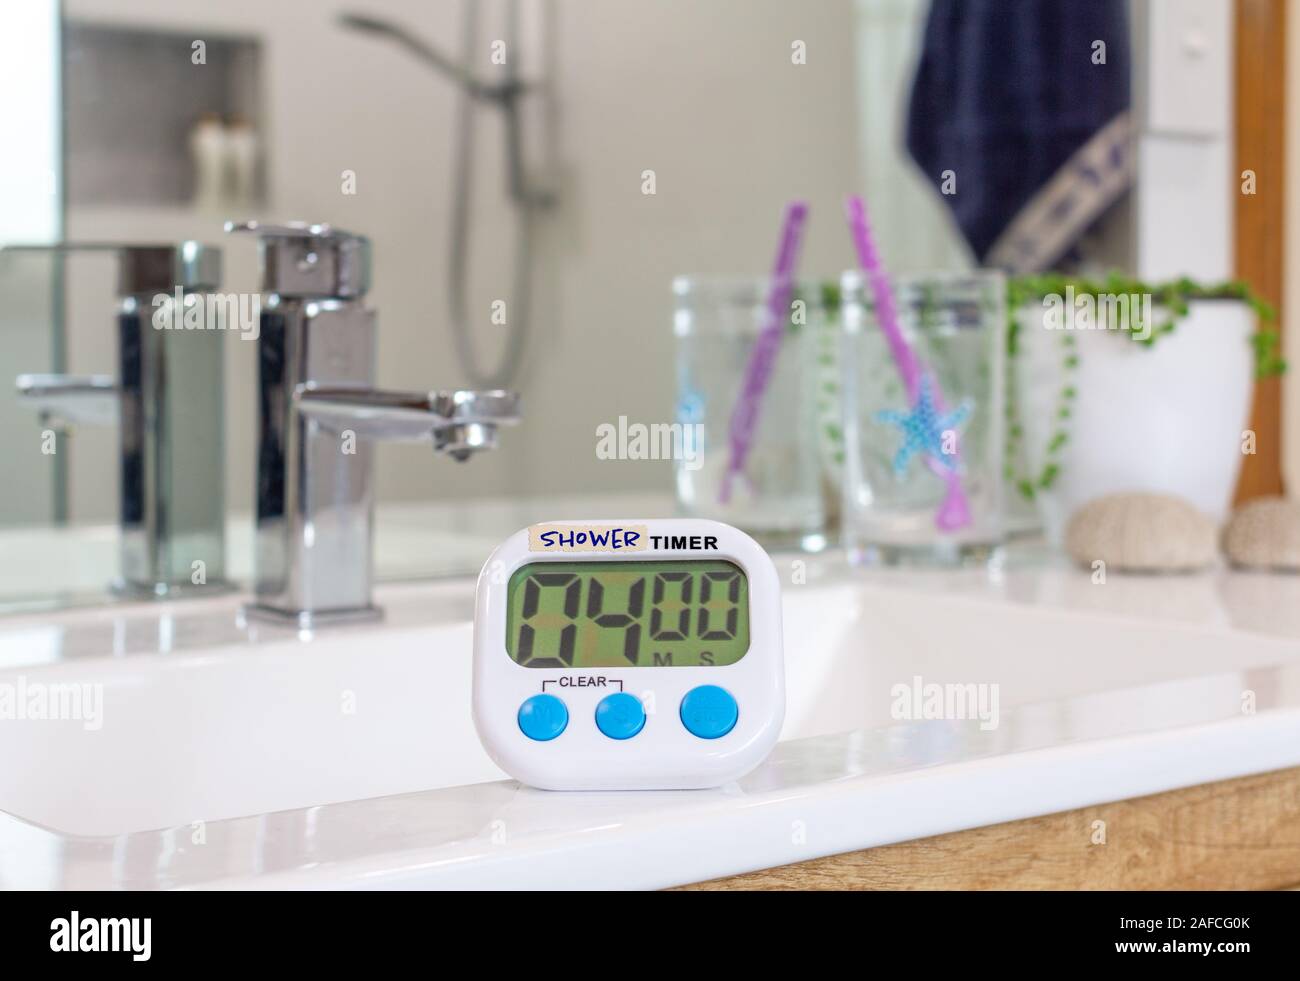 Minuterie de douche faits maison dans la salle de bains, utilisé en temps gratuites en raison de restrictions d'eau causés par les conditions de sécheresse en changement climatique Banque D'Images